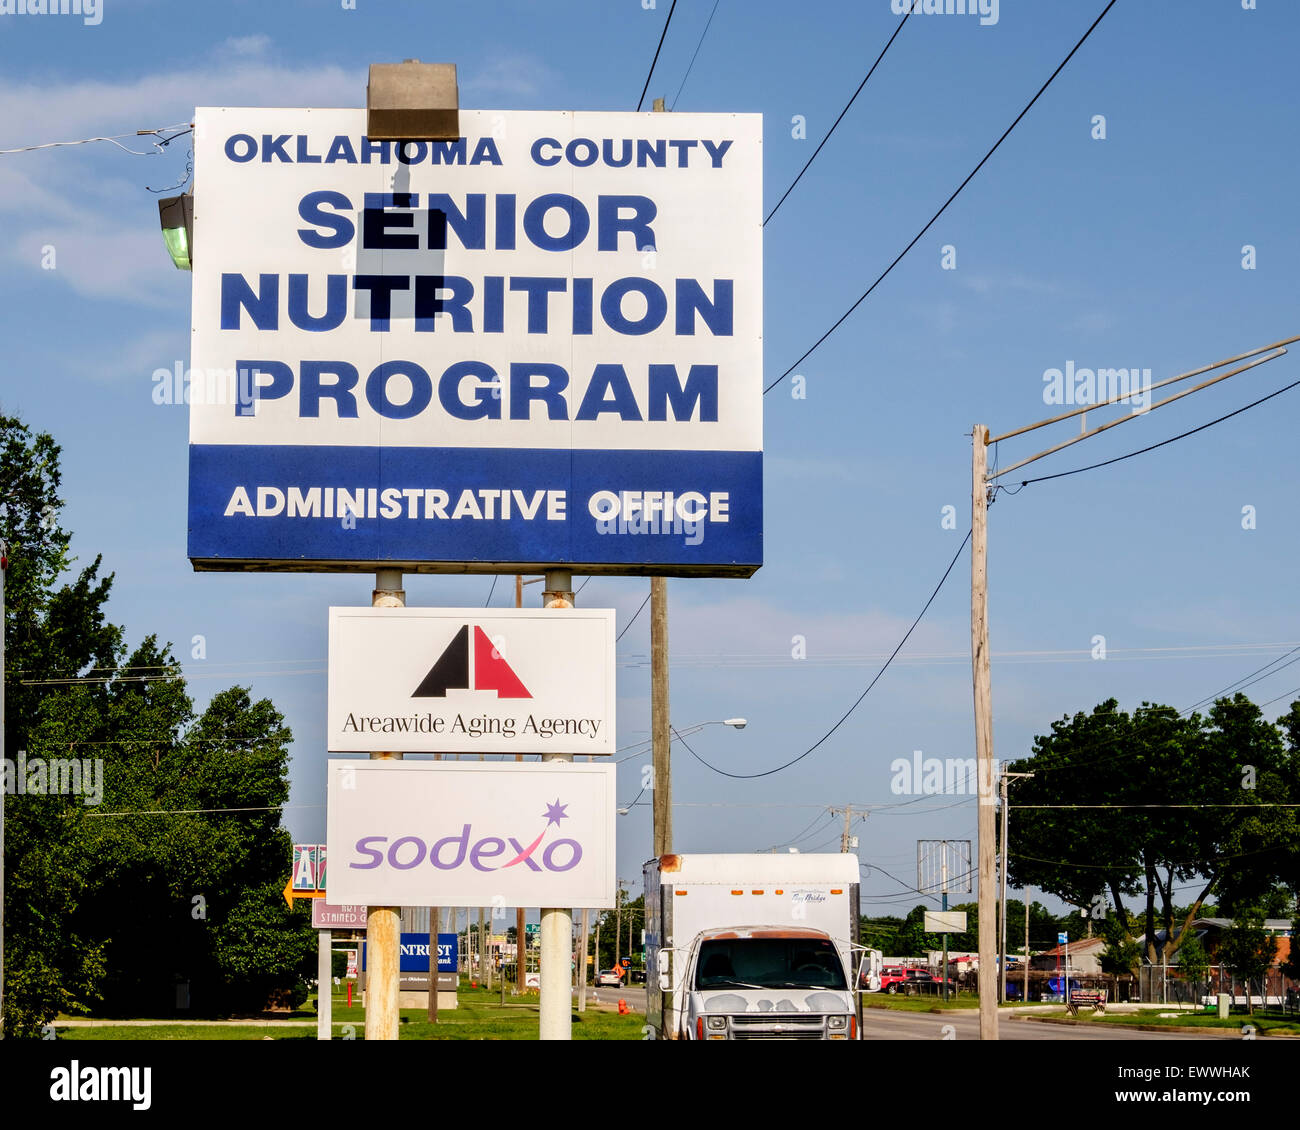 Un panneau de poteau annonçant Oklahoma County Senior Nutrition Program à Oklahoma City, Oklahoma, États-Unis pour les personnes âgées souffrant d'insécurité alimentaire. Banque D'Images